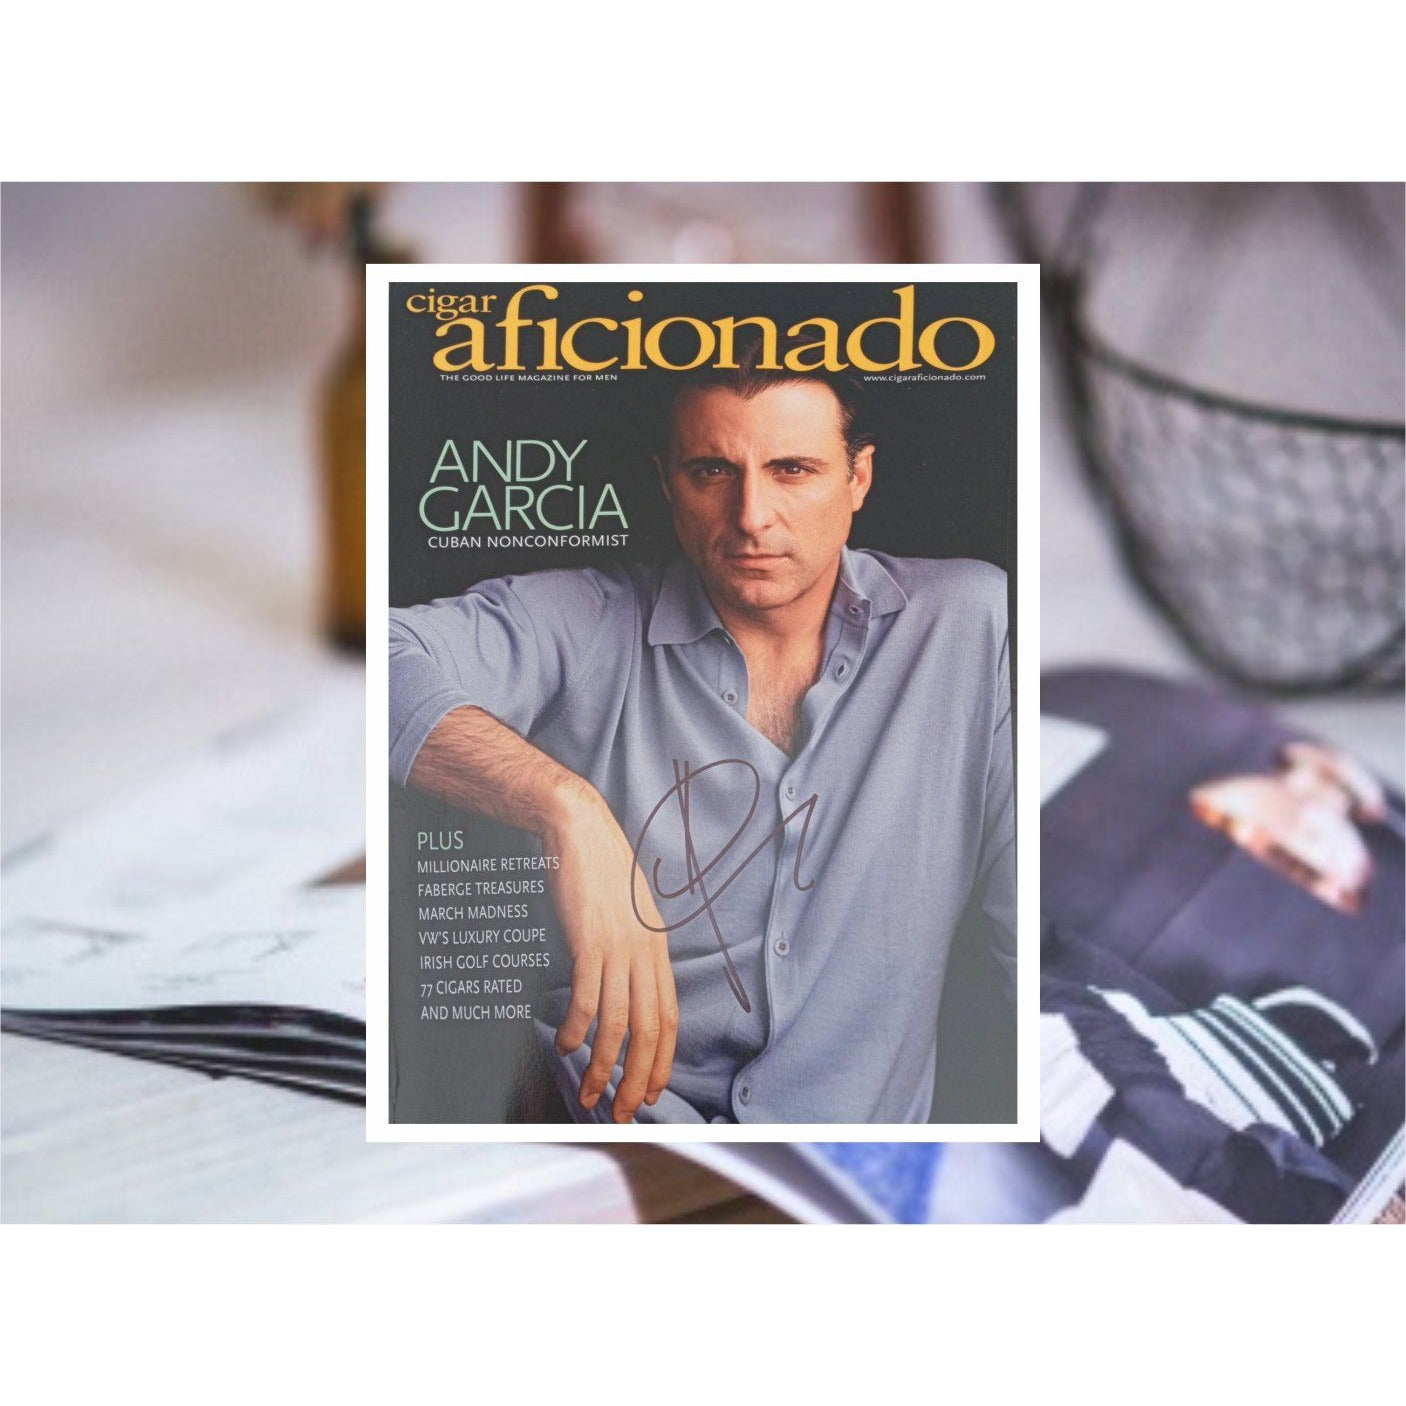 Andy Garcia Cigar Aficionado magazine cover signes